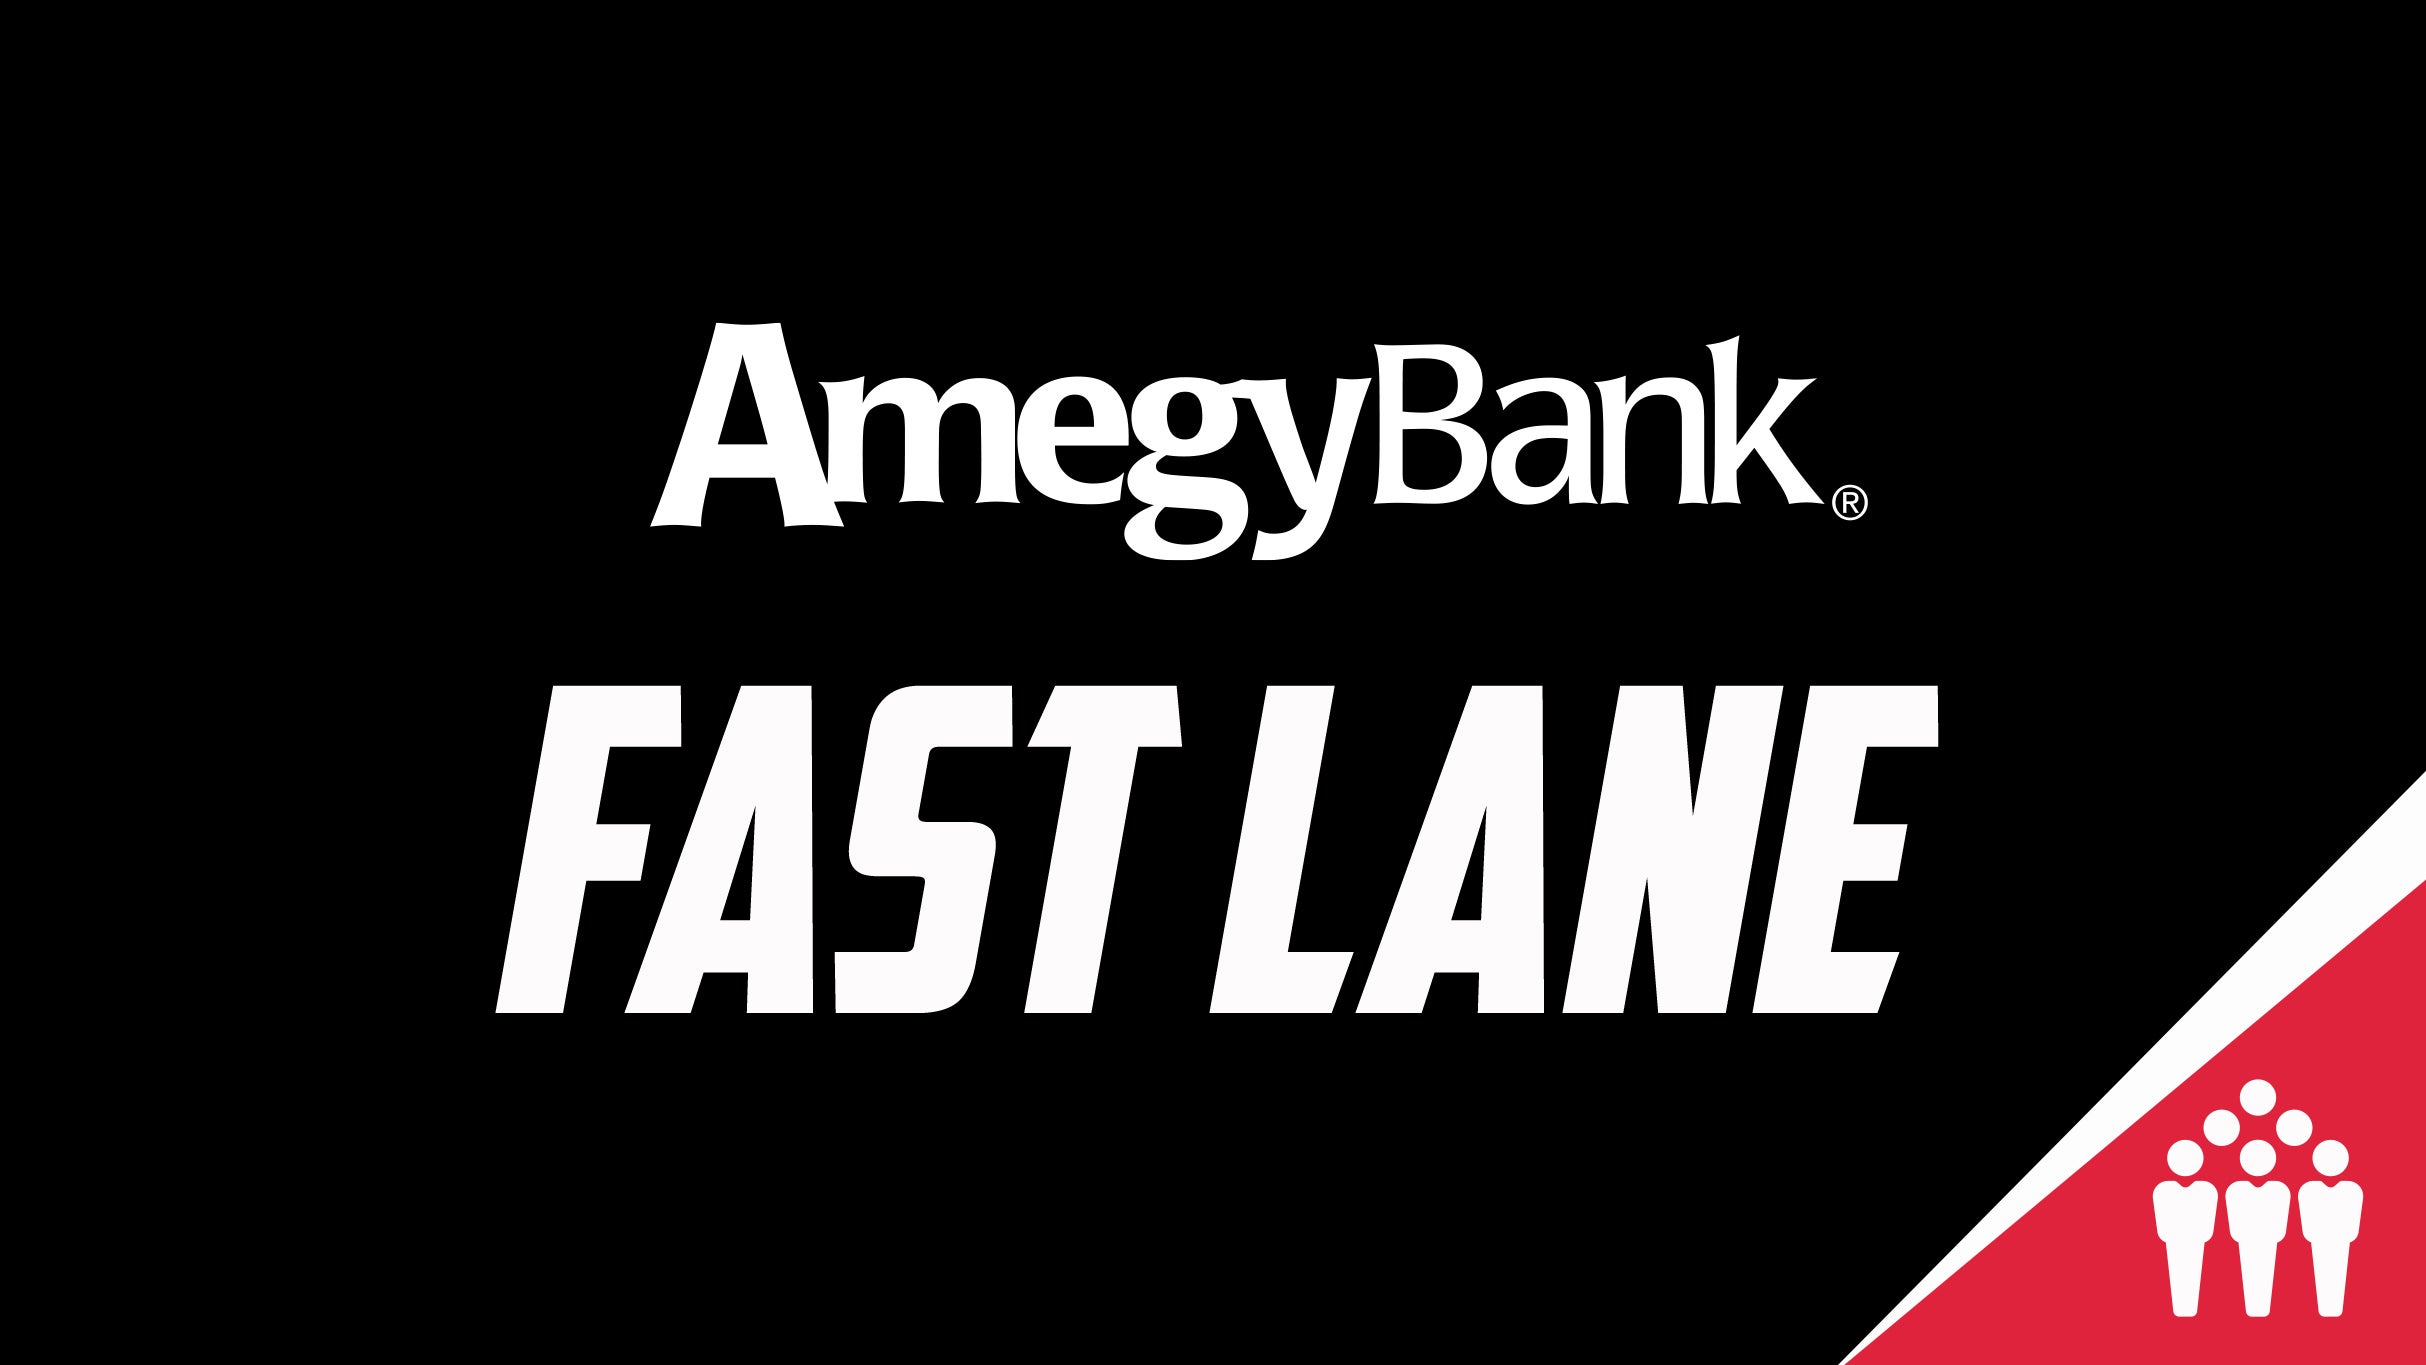 AmegyBank Fast Lane presale information on freepresalepasswords.com